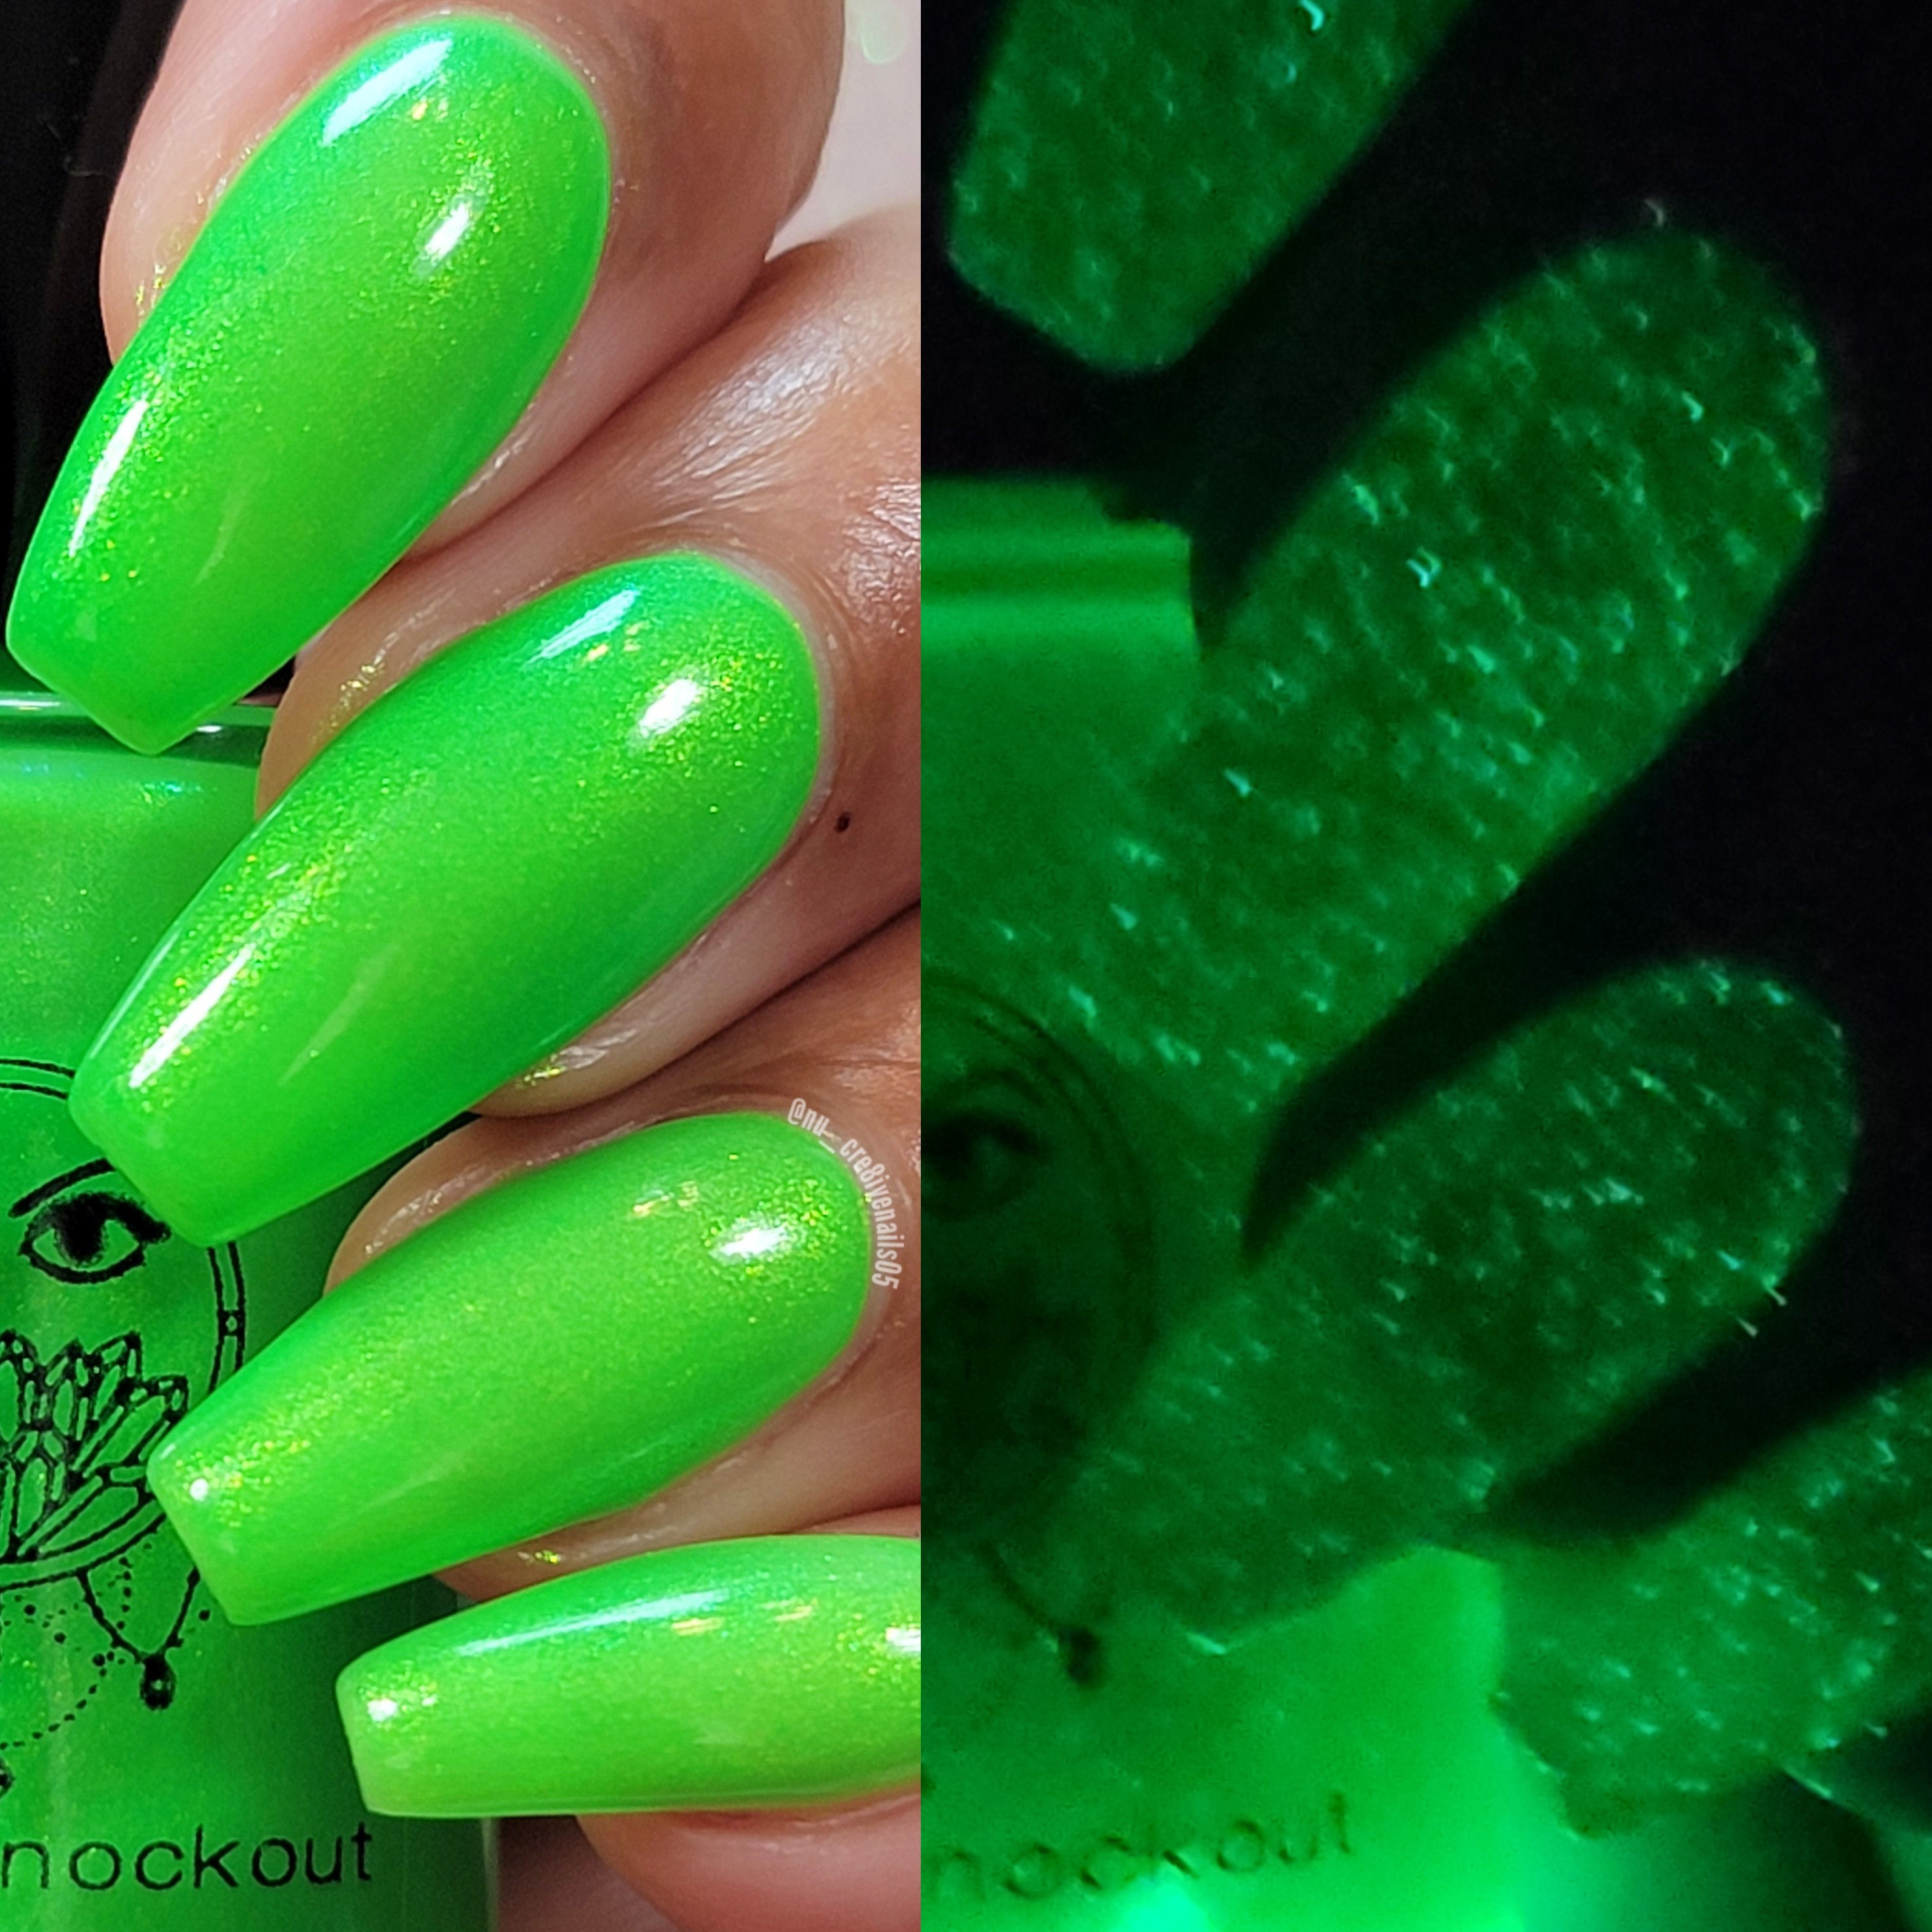 Neon green nail polish by Emily de Molly